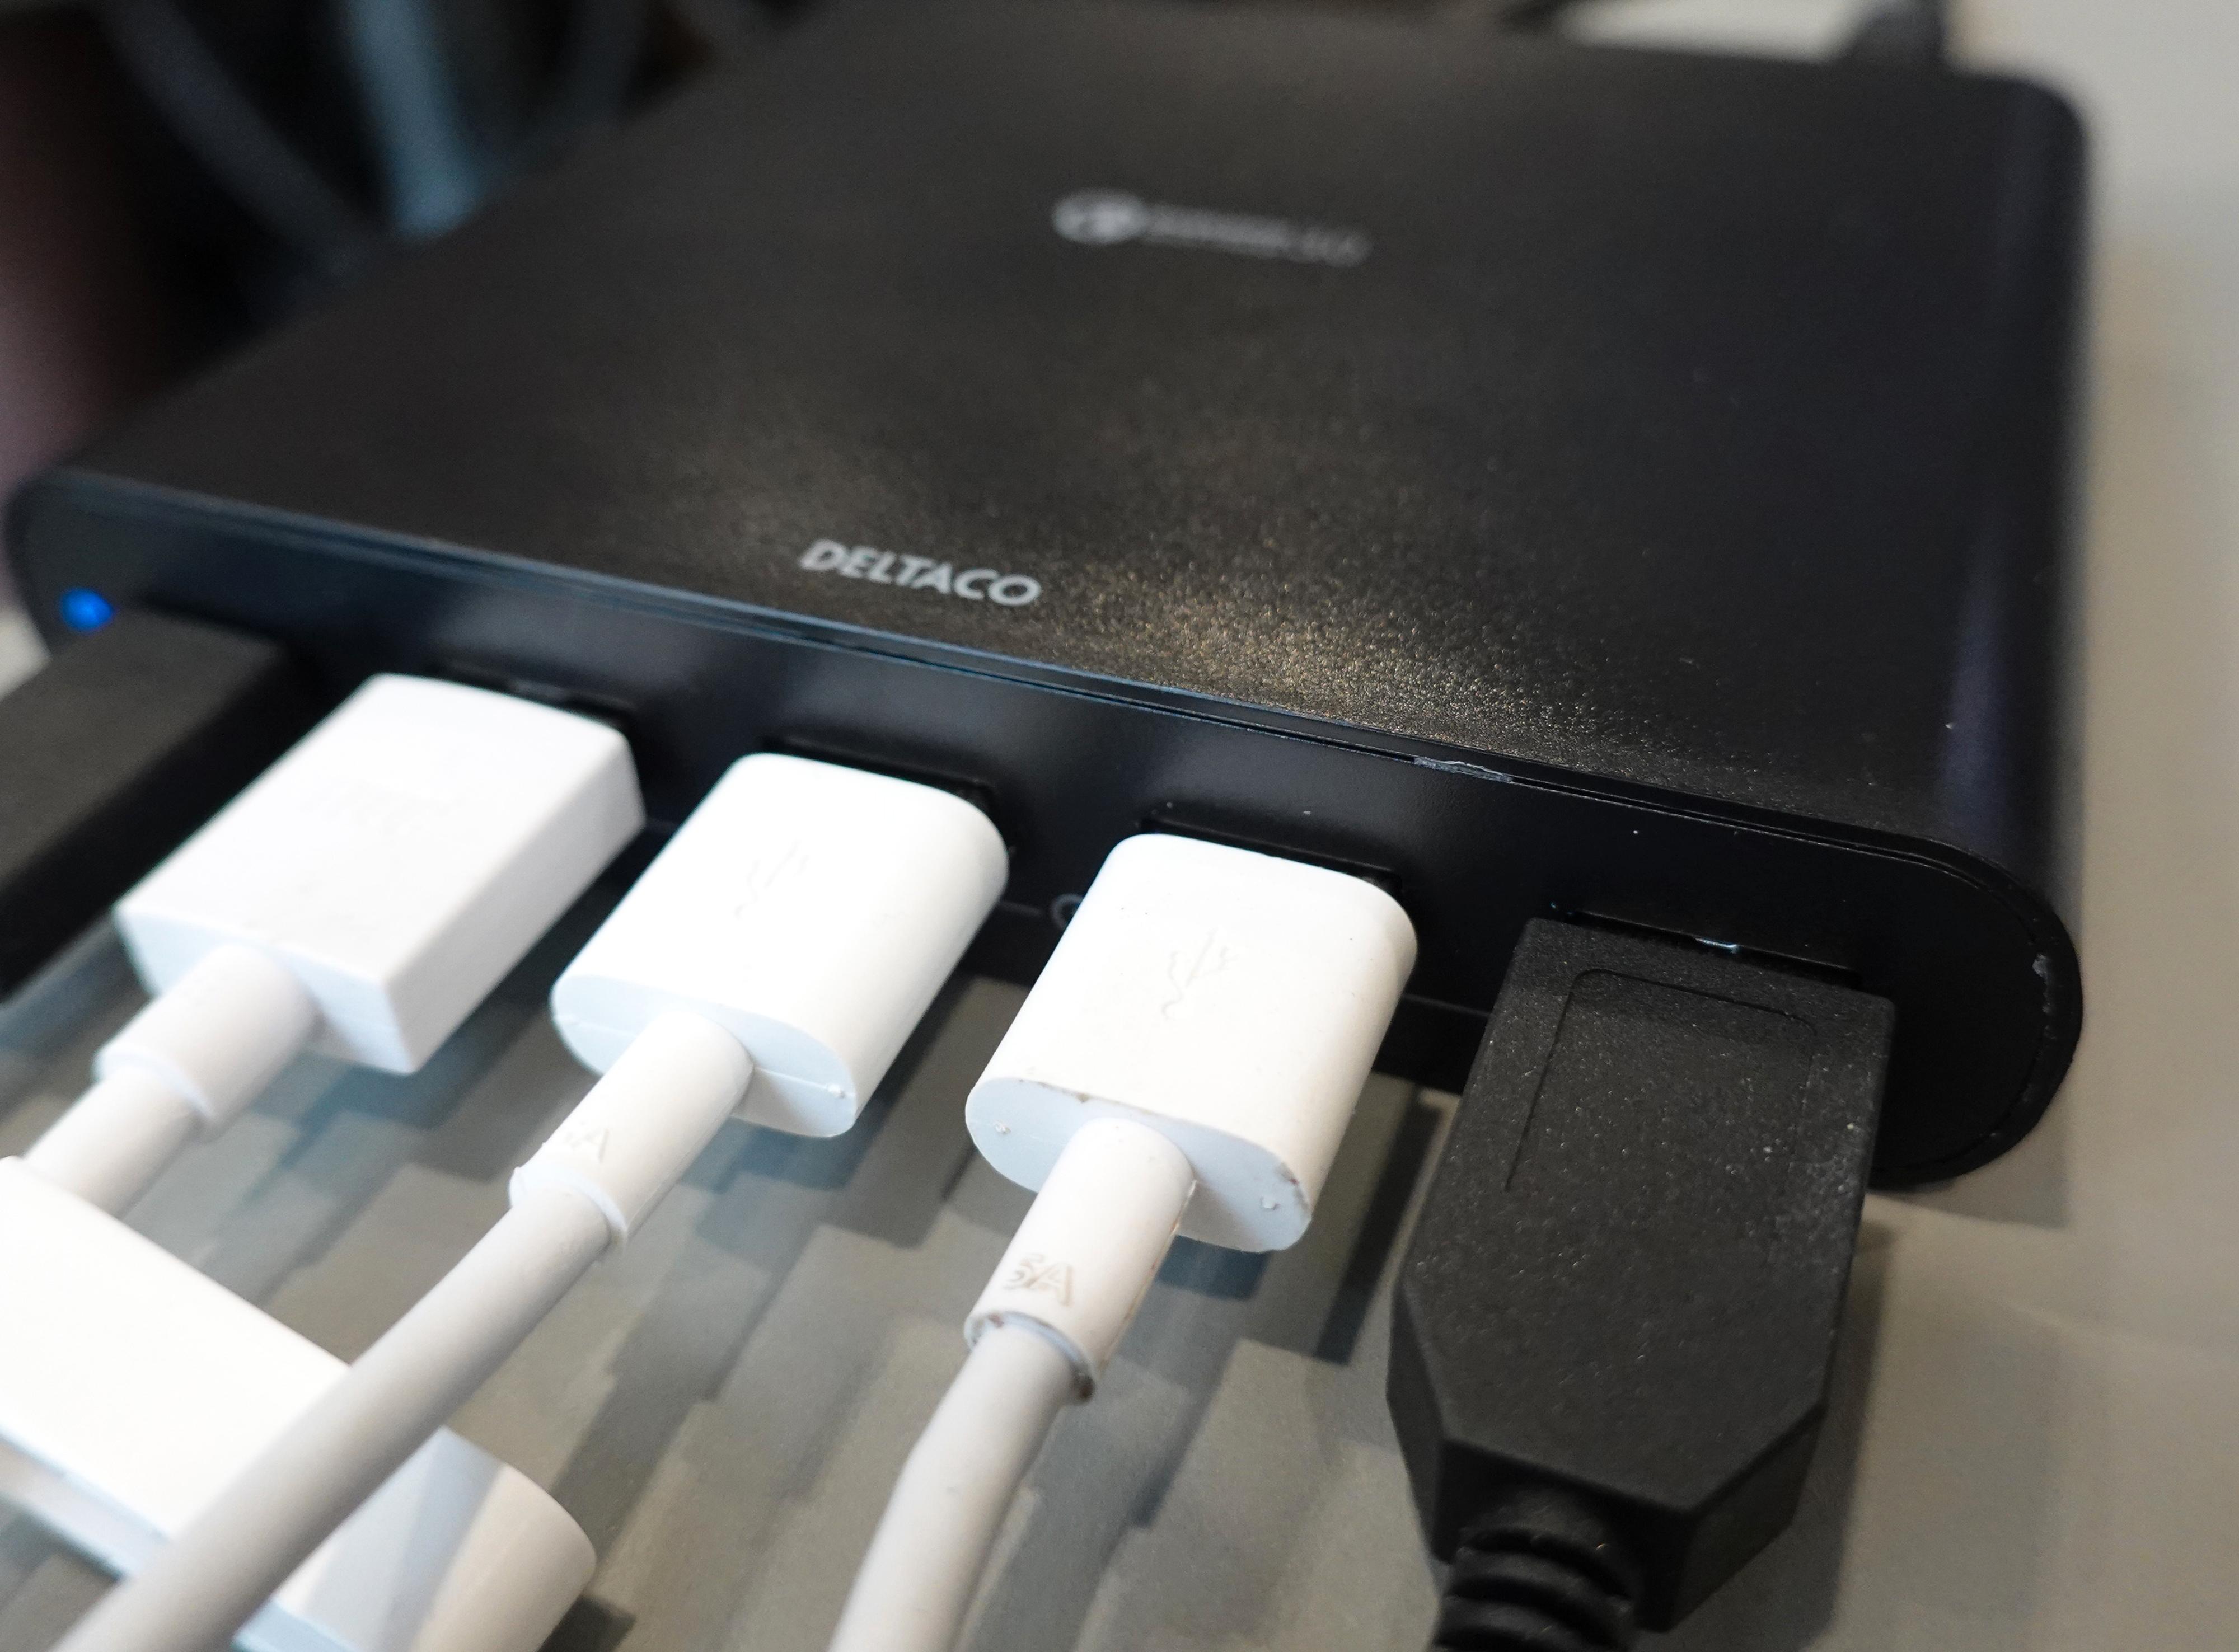 De fem portene er fleksible og kunne levert hele 140 watt til sammen hvis strømforsyningen var kraftig nok. I stedet fordeles 80 watt utover de fem portene. Den kan altså ikke hurtiglade alt på en gang. I stedet vil den velge å hurtiglade det den har kapasitet til, mens den fungerer som vanlig lader eller strømforsyning til resten. De 80 wattene er imidlertid nok til å makse alle de fire vanlige USB-A-kontaktene samtidig. Det er kun om du kobler til PC eller hurtigladende iPhone samtidig du vil måtte leve med tregere lading for noen av dingsene.